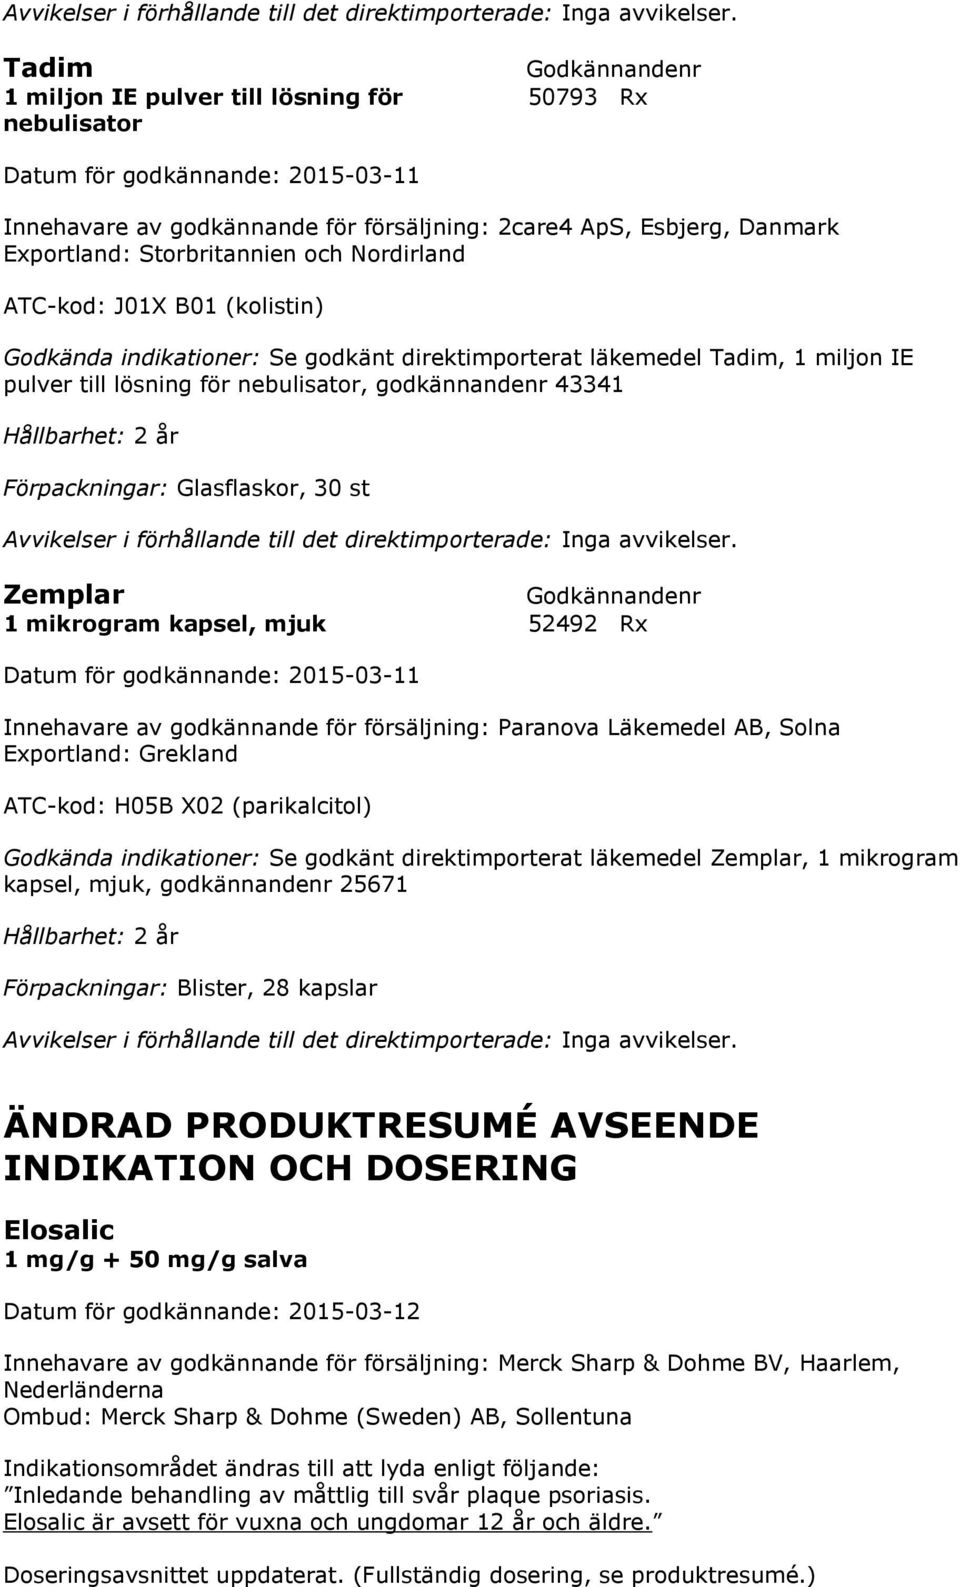 mikrogram kapsel, mjuk 52492 Rx Innehavare av godkännande för försäljning: Paranova Läkemedel AB, Solna Exportland: Grekland ATC-kod: H05B X02 (parikalcitol) Godkända indikationer: Se godkänt